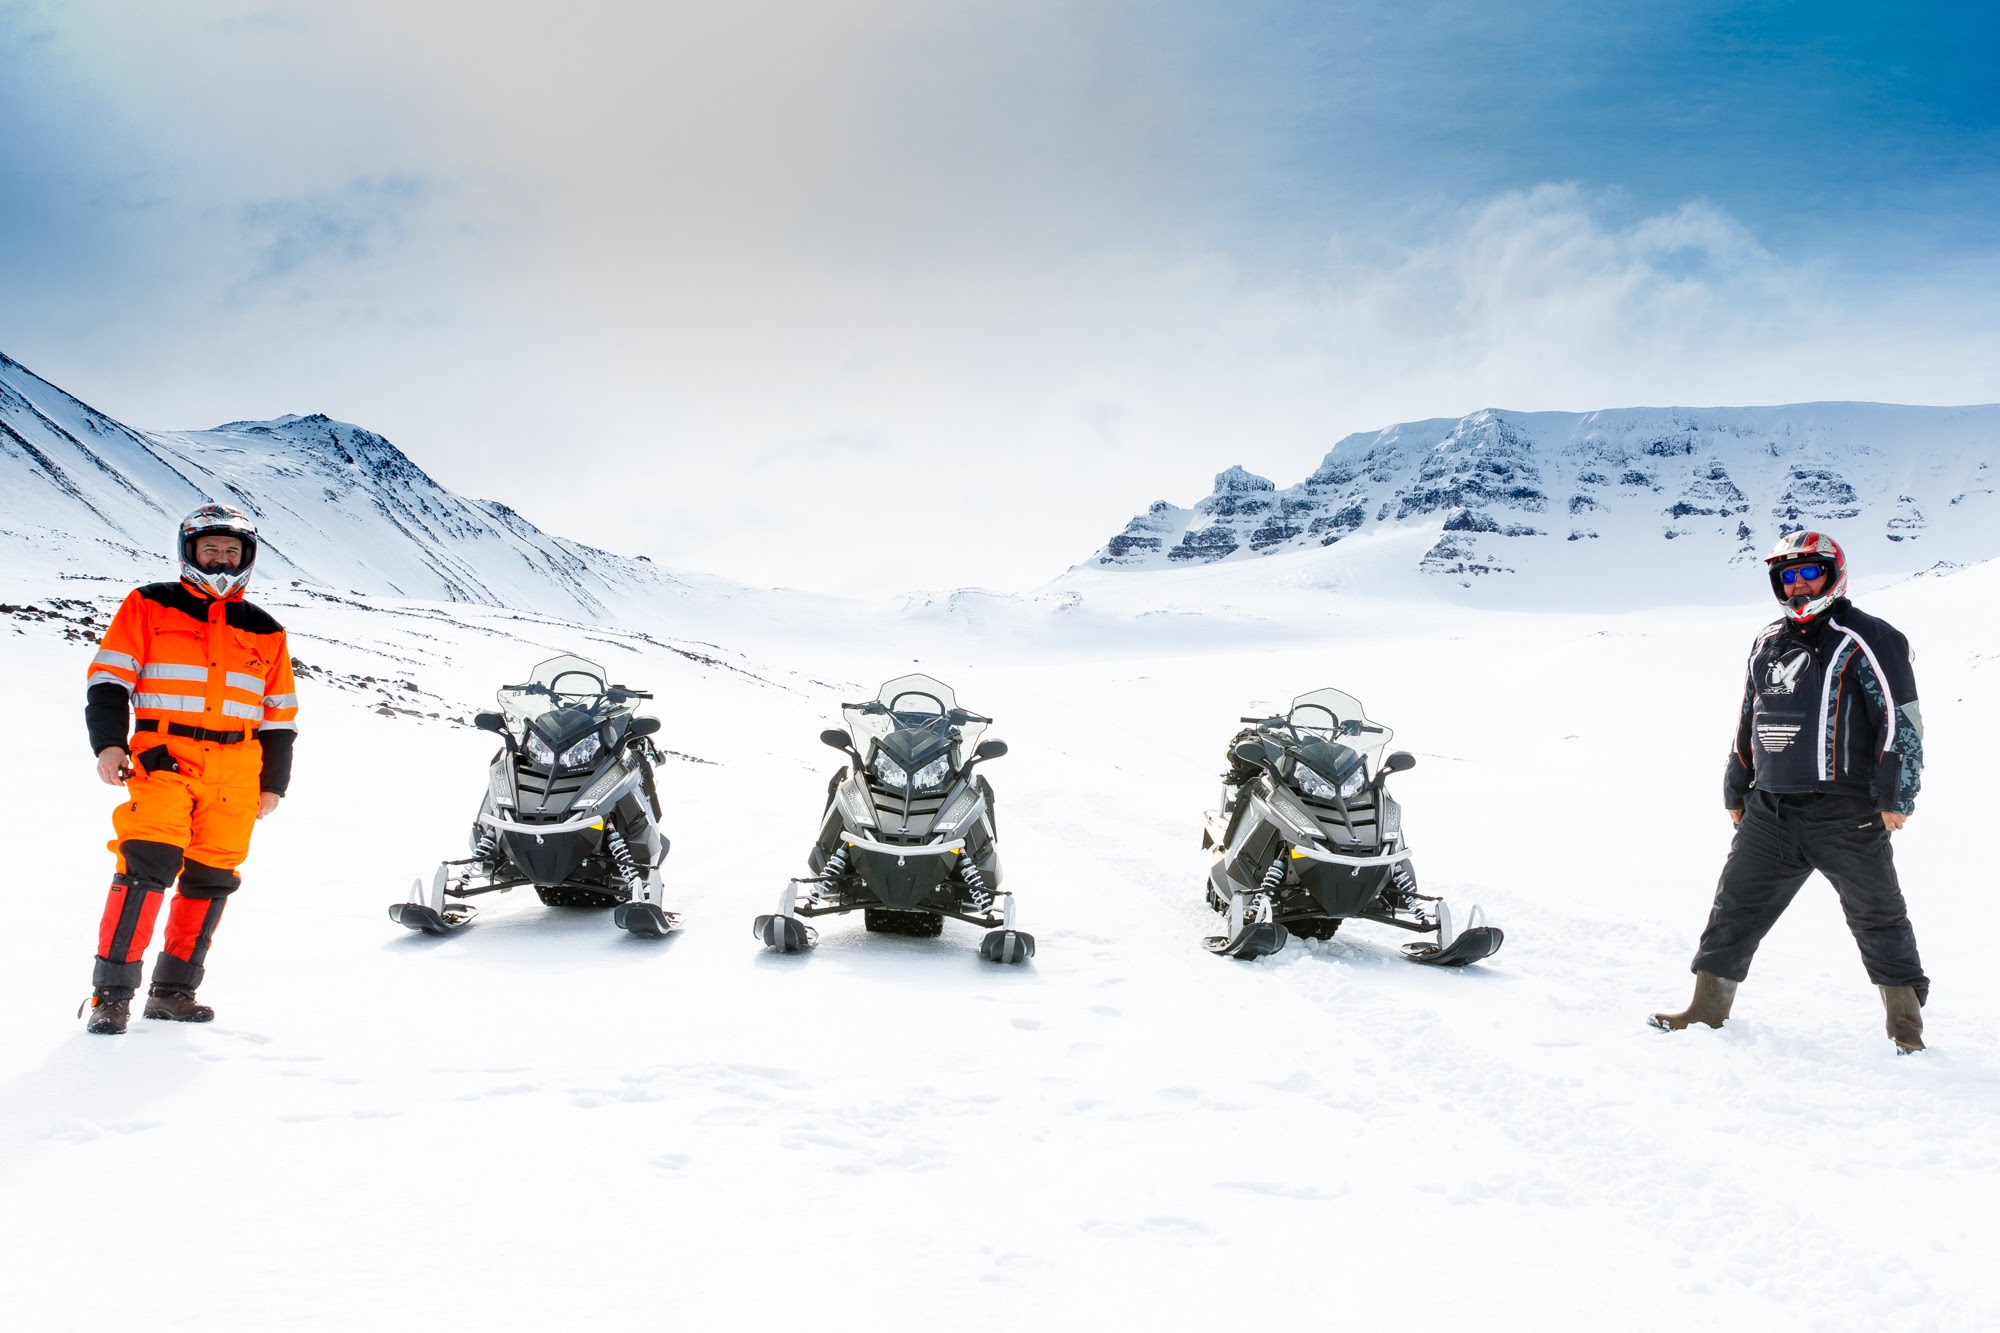 Découvrez les paysages hivernaux du nord de l'Islande lors de cette excursion motoneige